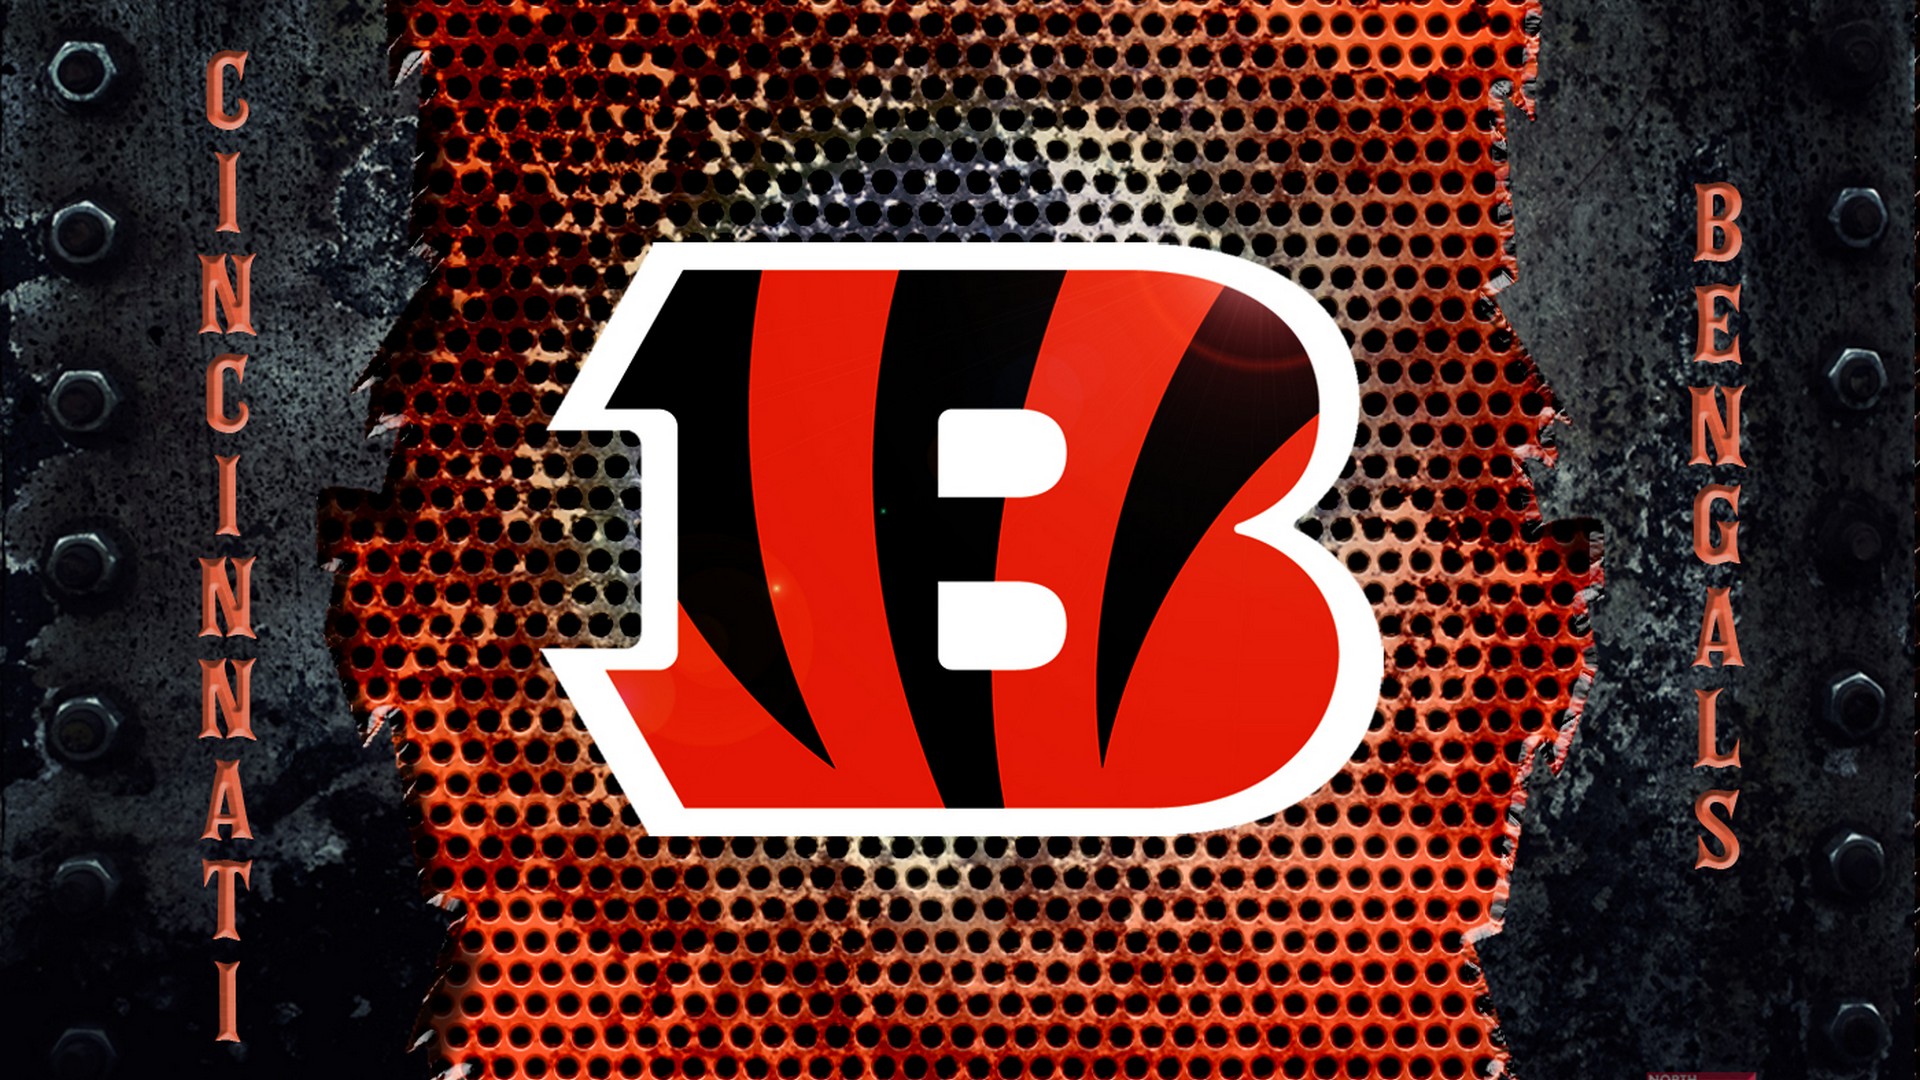 Cincinnati Bengals Wallpaper Hd - Bengals Draft Picks 2020 , HD Wallpaper & Backgrounds